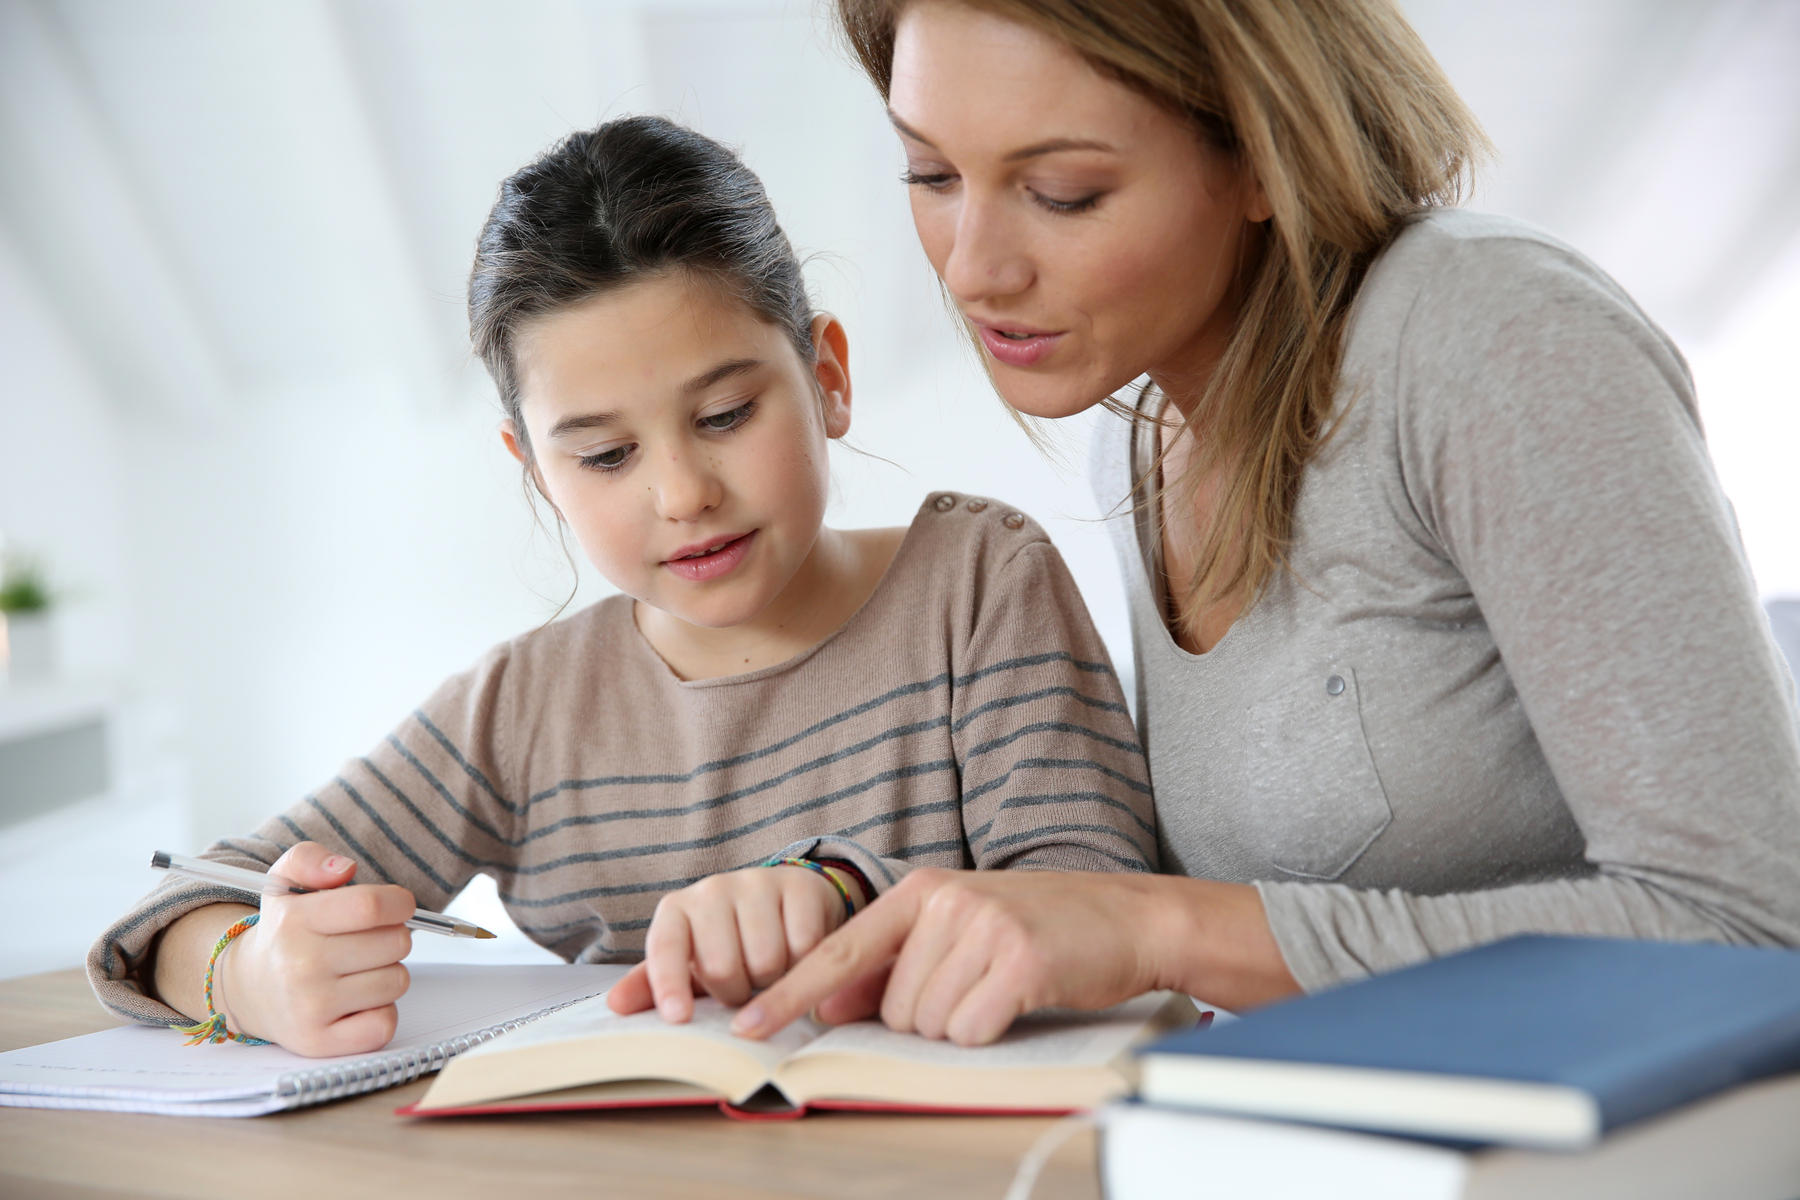 Δωρεάν σεμινάριο για γονείς με θέμα «Διάβασμα & ρόλος/εμπλοκή γονέων»